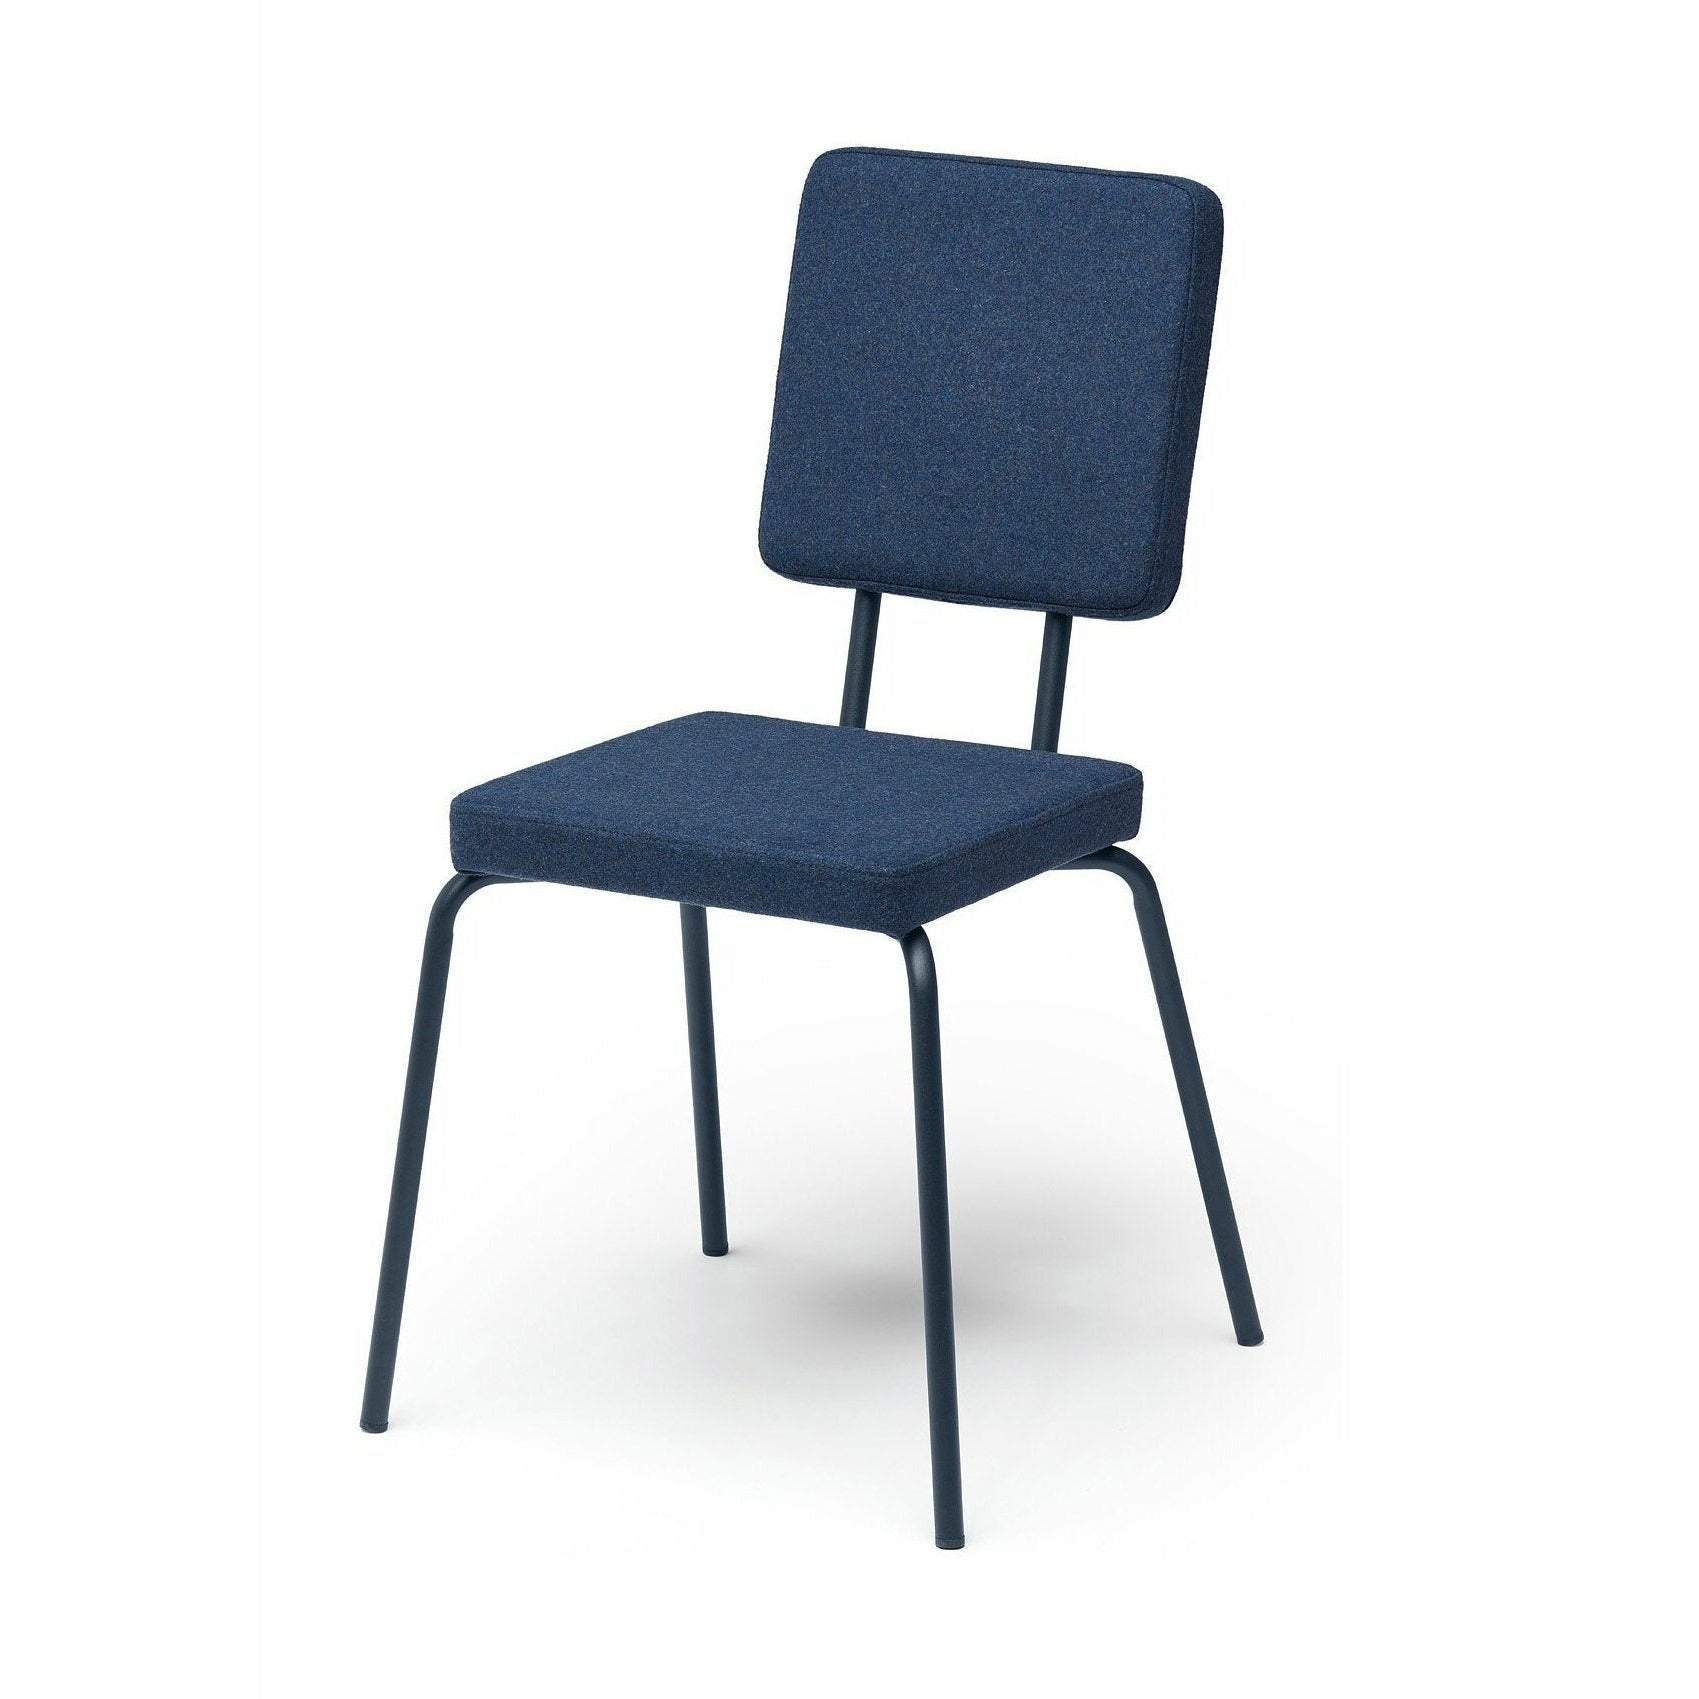 Puik opcja fotela krzesełka i kwadrat oparcia, ciemnoniebieski